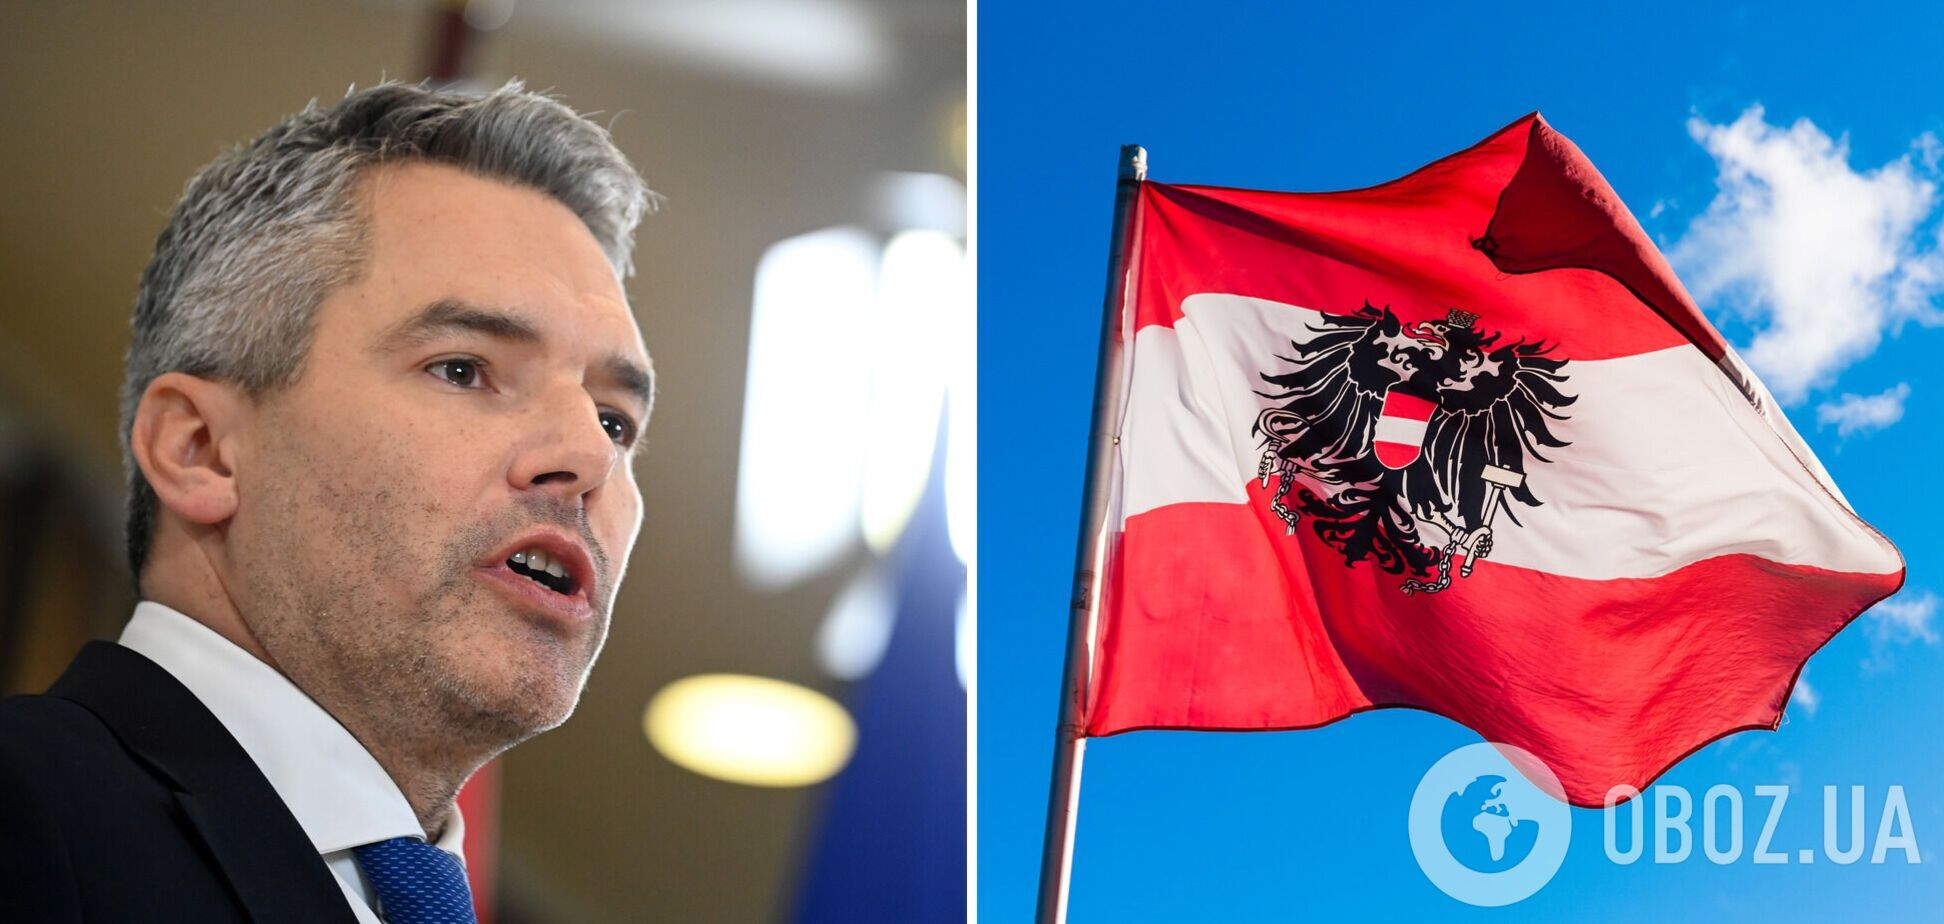 Нехаммер избран главой Австрийской народной партии